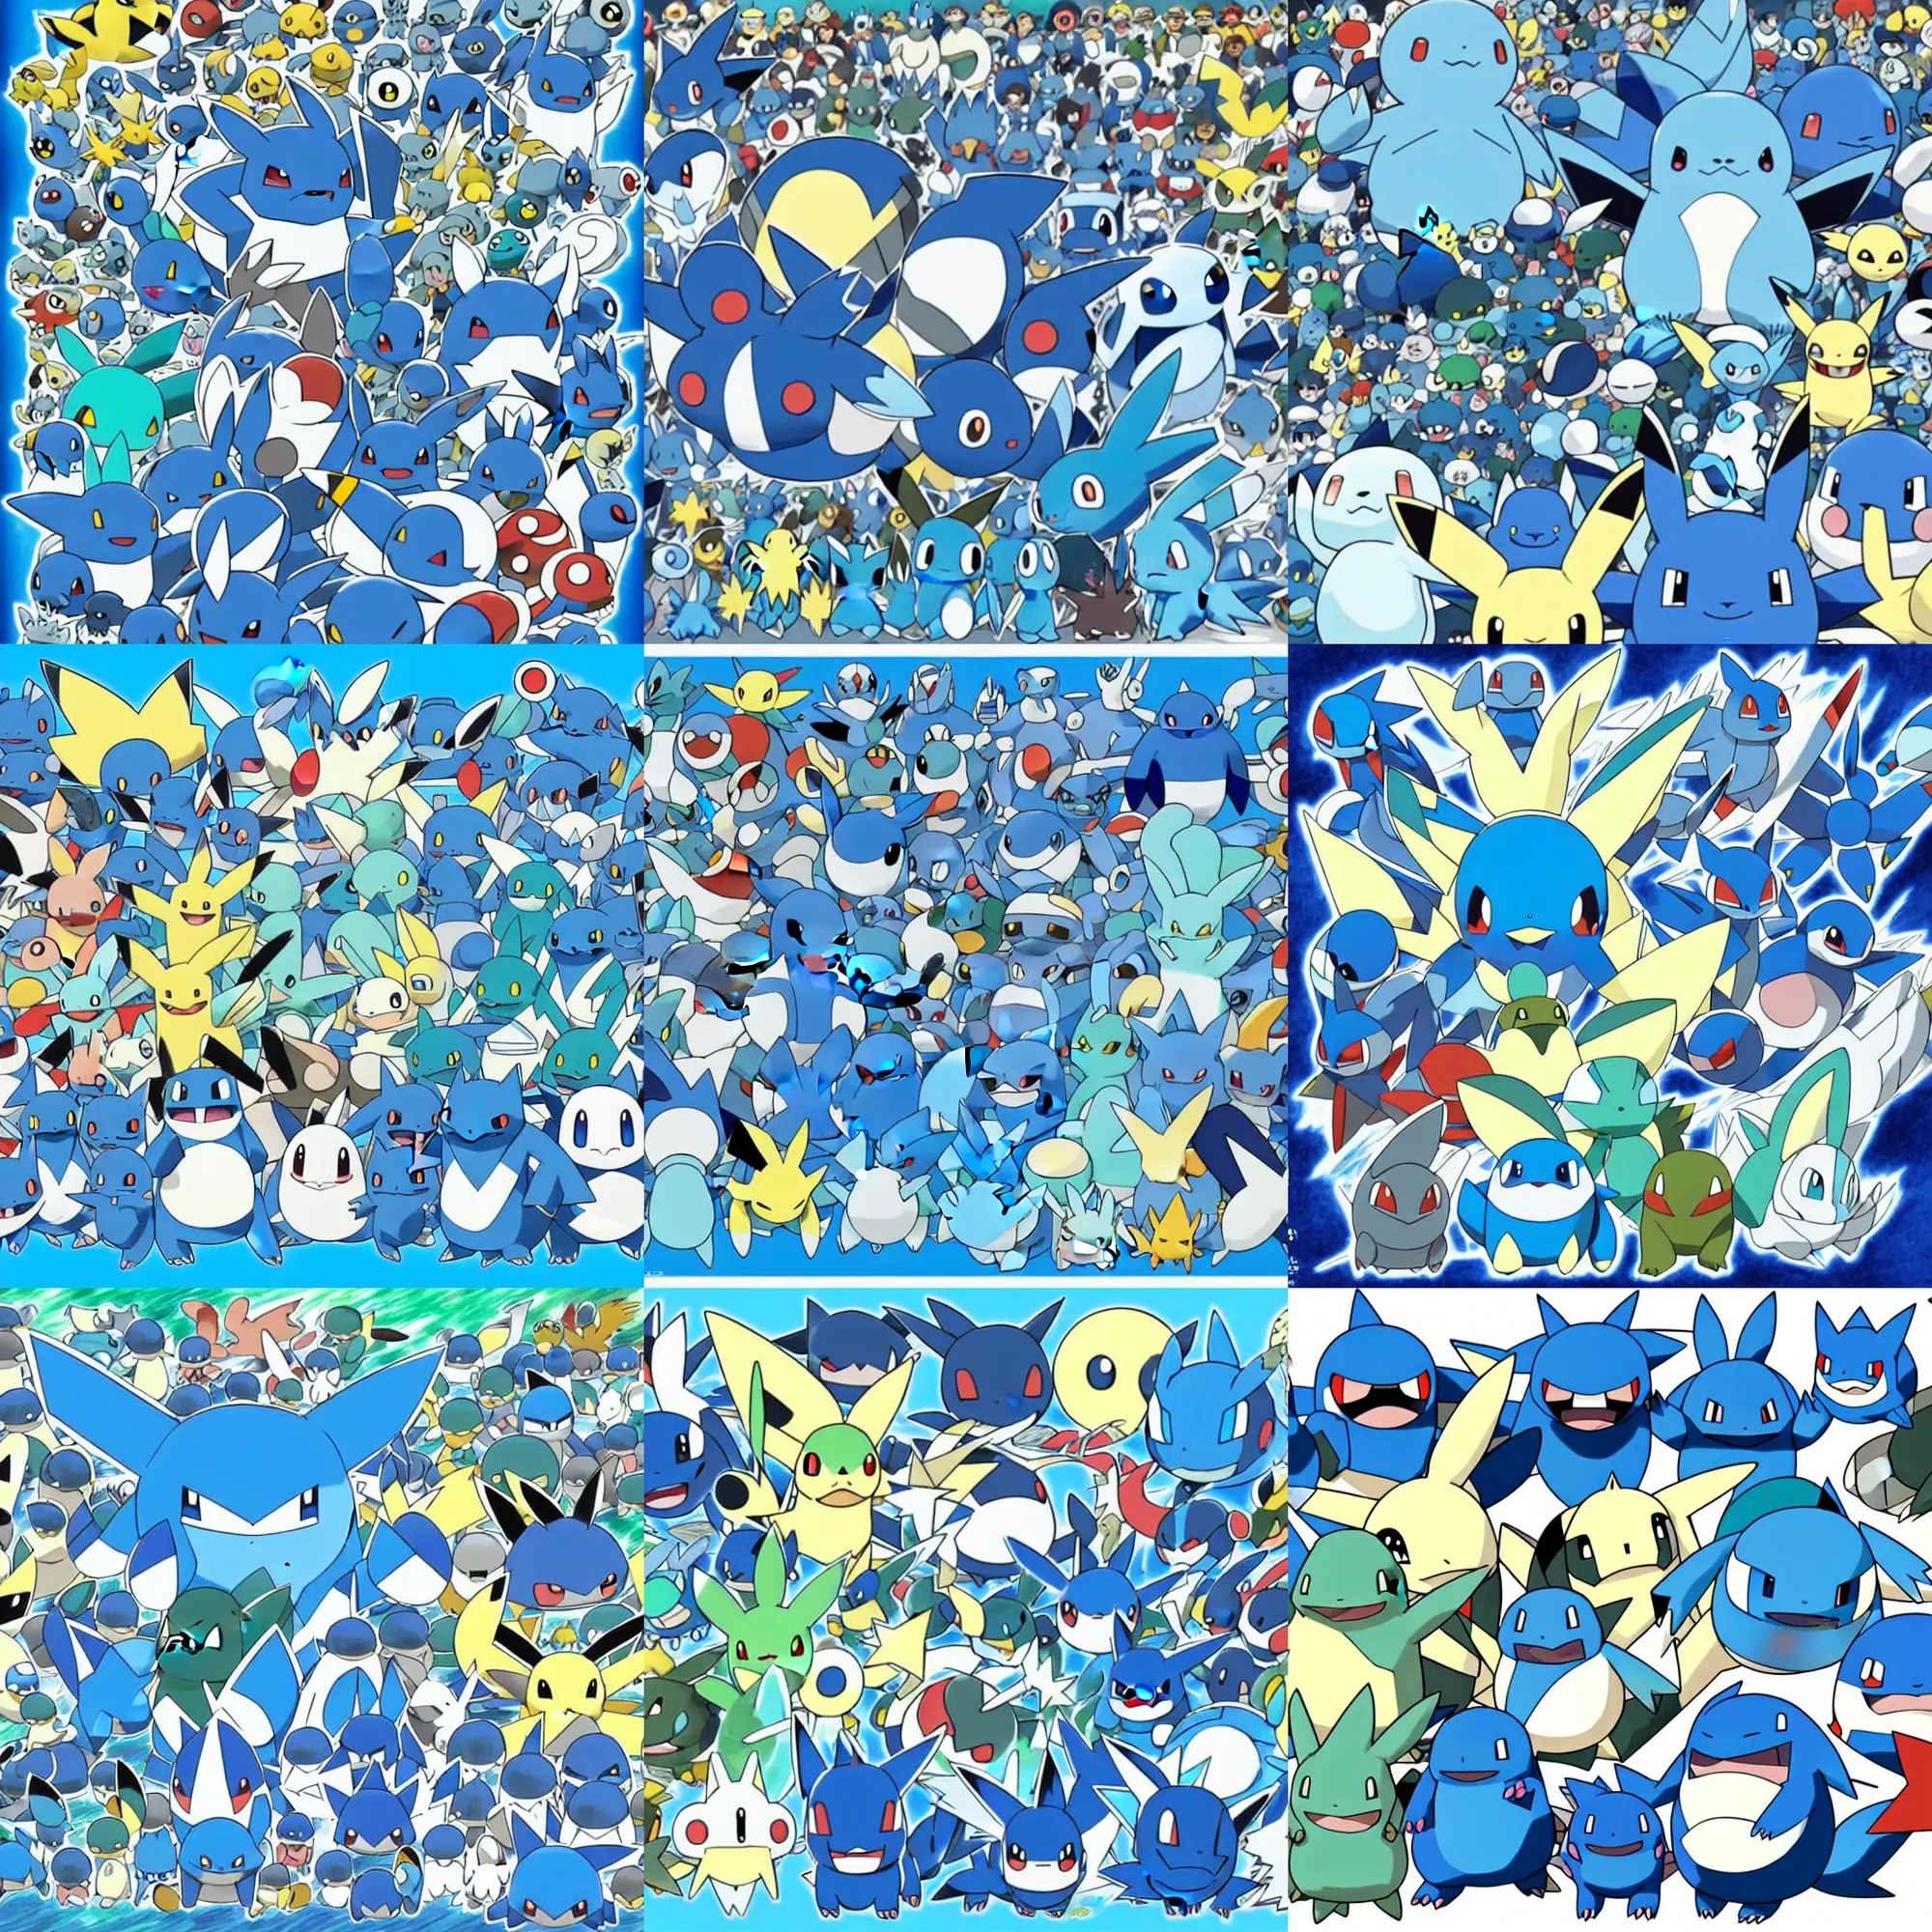 Prompt: official art of a diverse crowd of blue Pokémon, by Ken Sugimori and Junichi Masuda, whitespace, Bulbapedia, Pokémon logo, Seaking Greninja Lanturn Gyarados snorlax